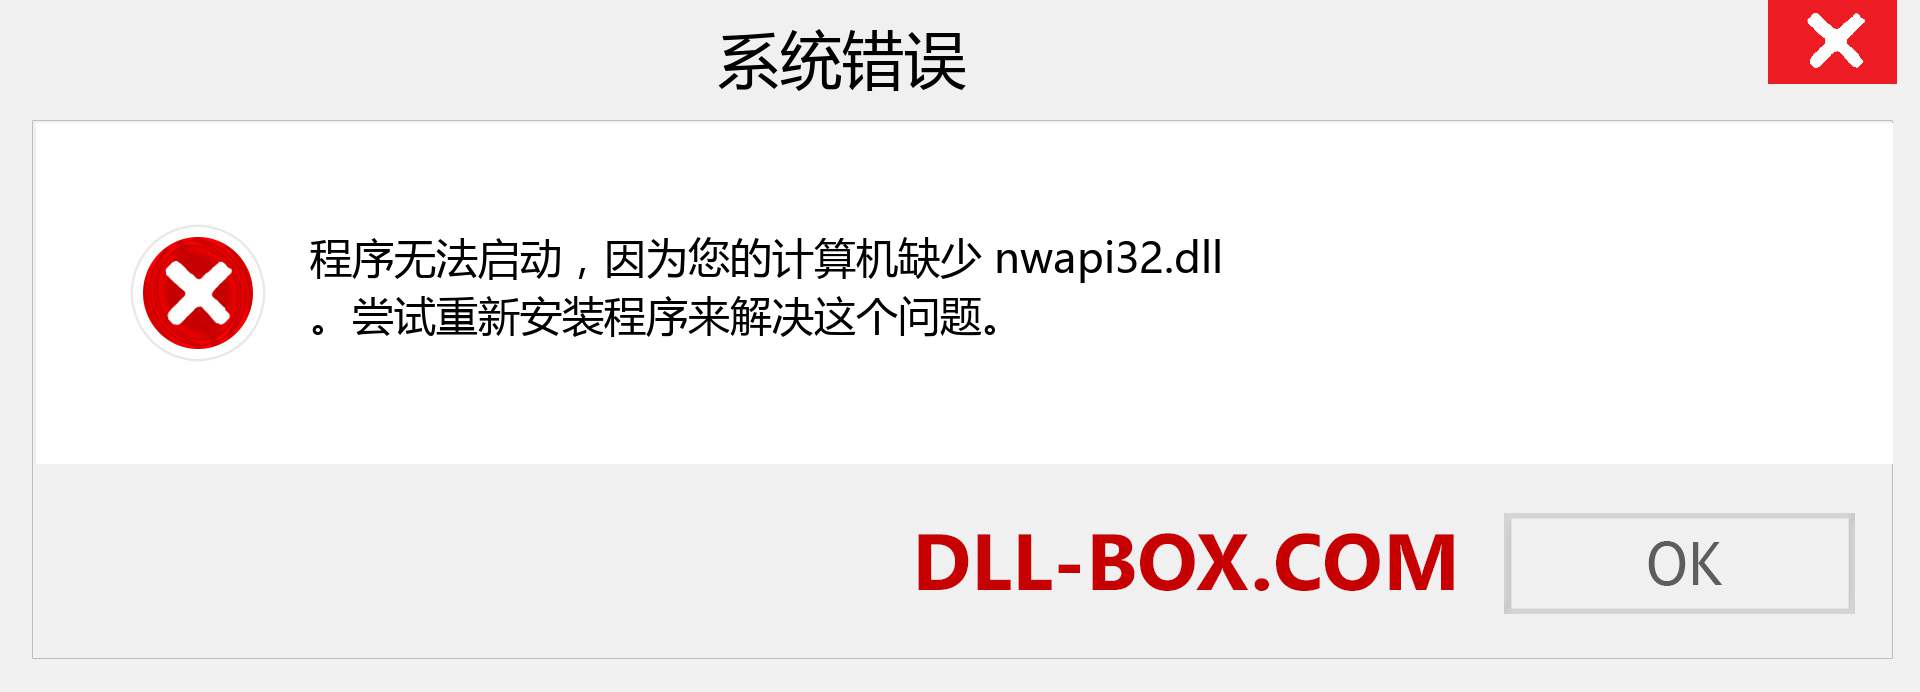 nwapi32.dll 文件丢失？。 适用于 Windows 7、8、10 的下载 - 修复 Windows、照片、图像上的 nwapi32 dll 丢失错误